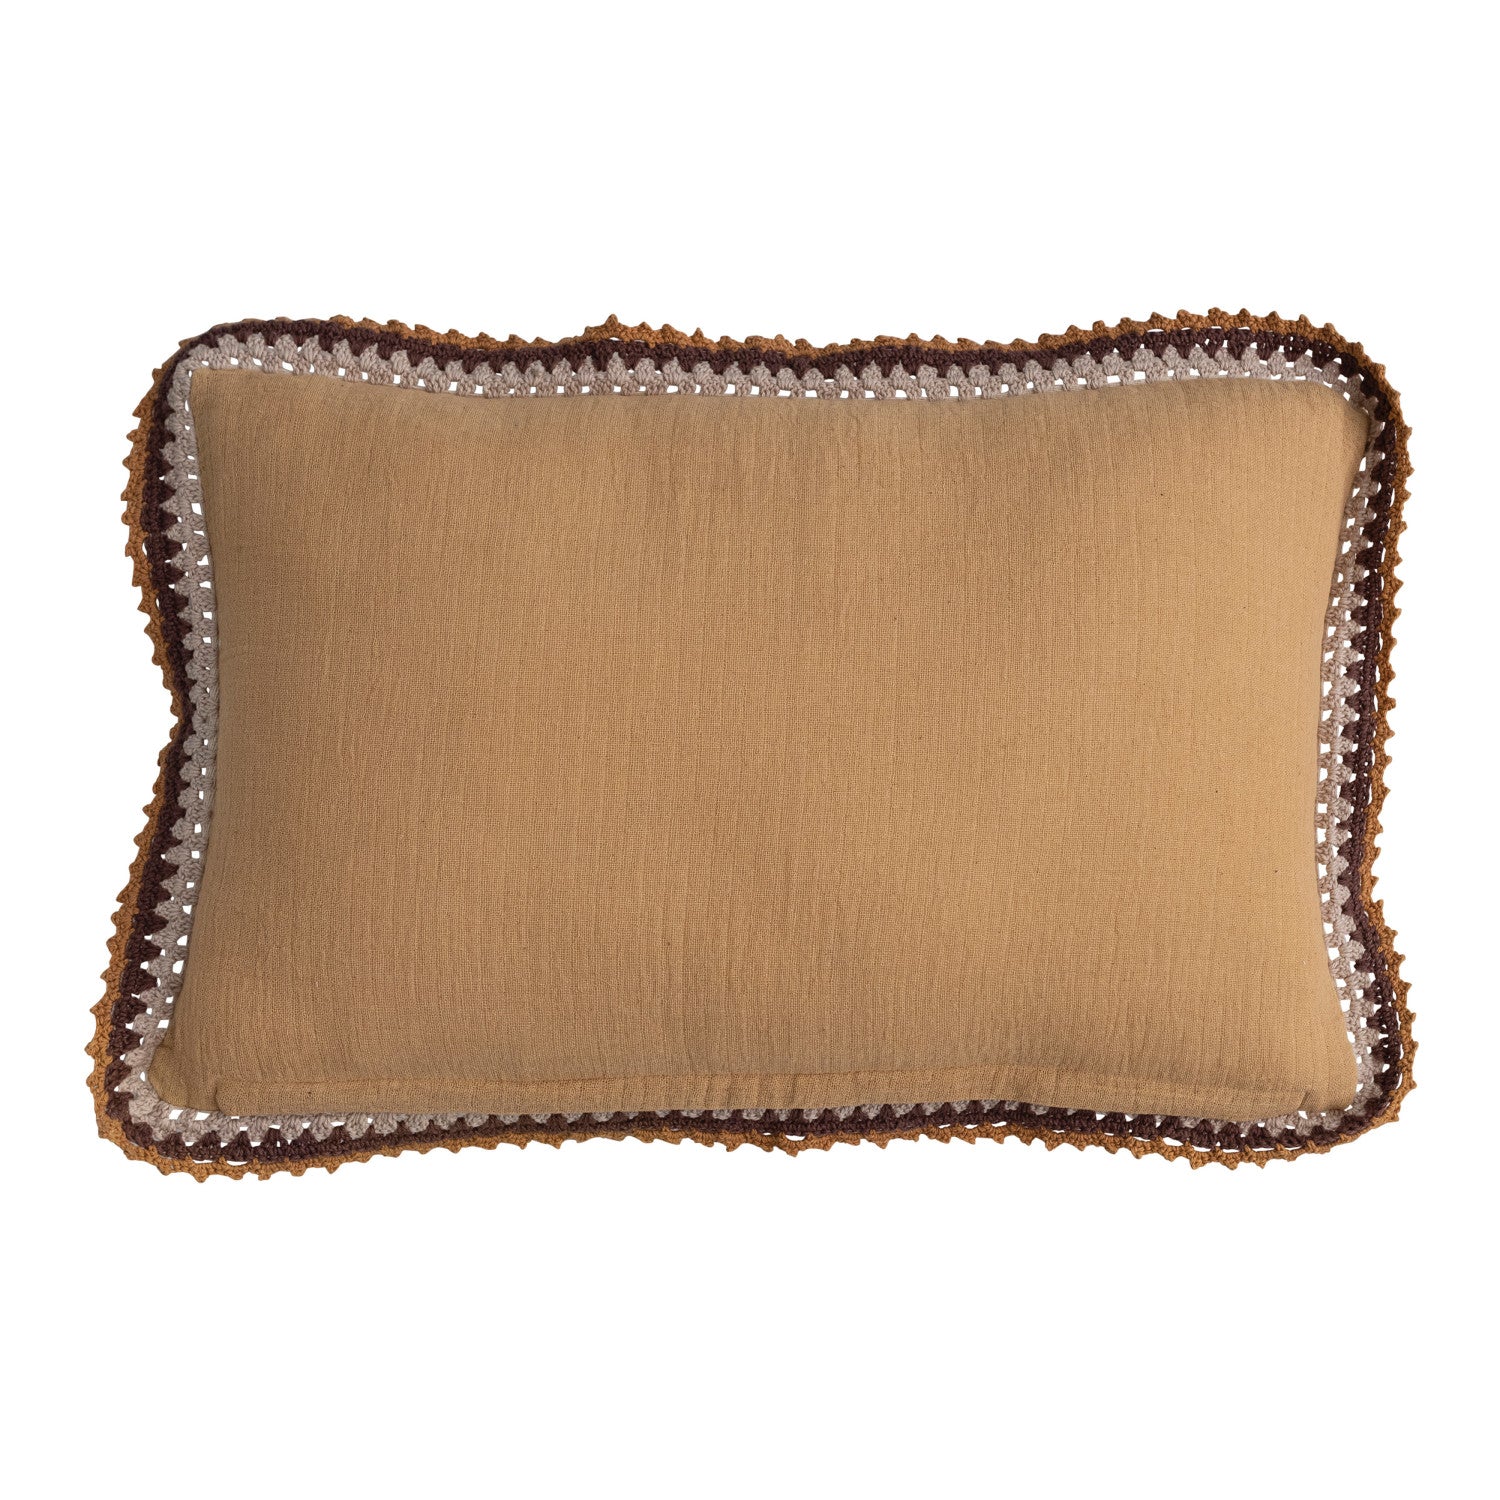 Cotton Lumbar Pillow w/ Crocheted Edge